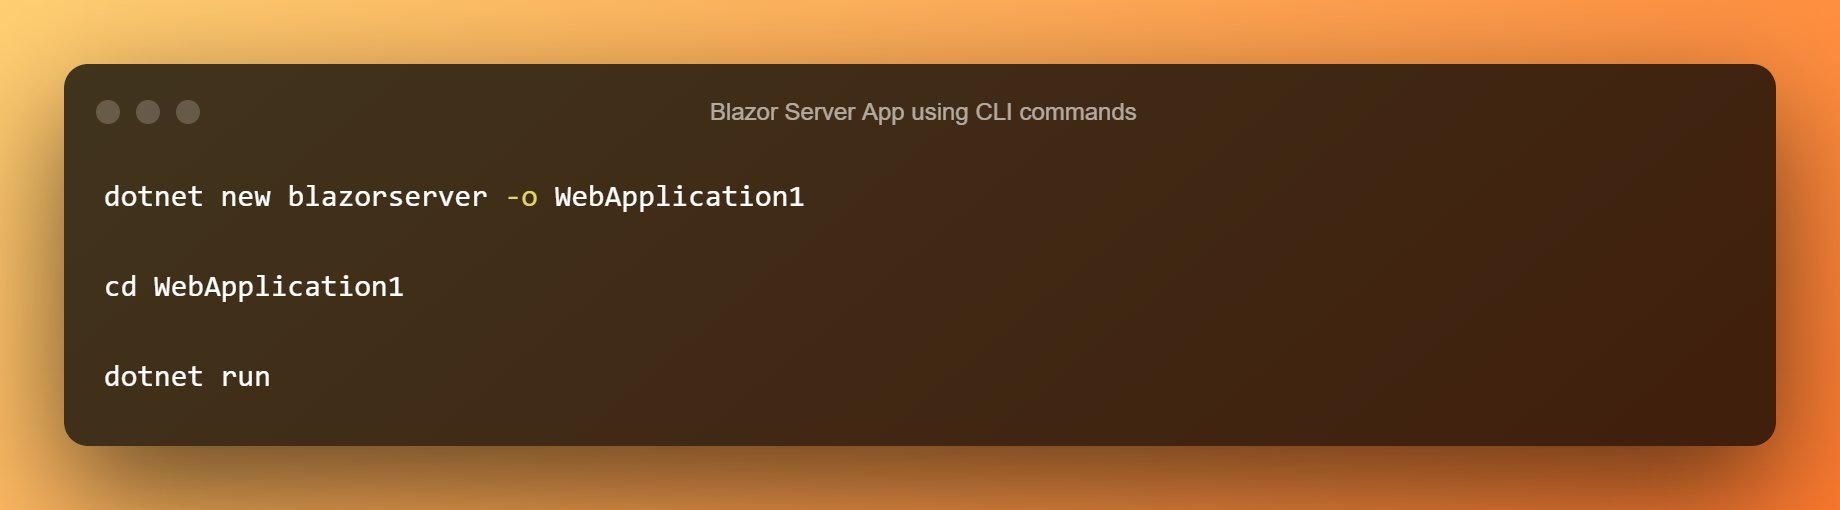 Blazor Server App Using CLI Commands